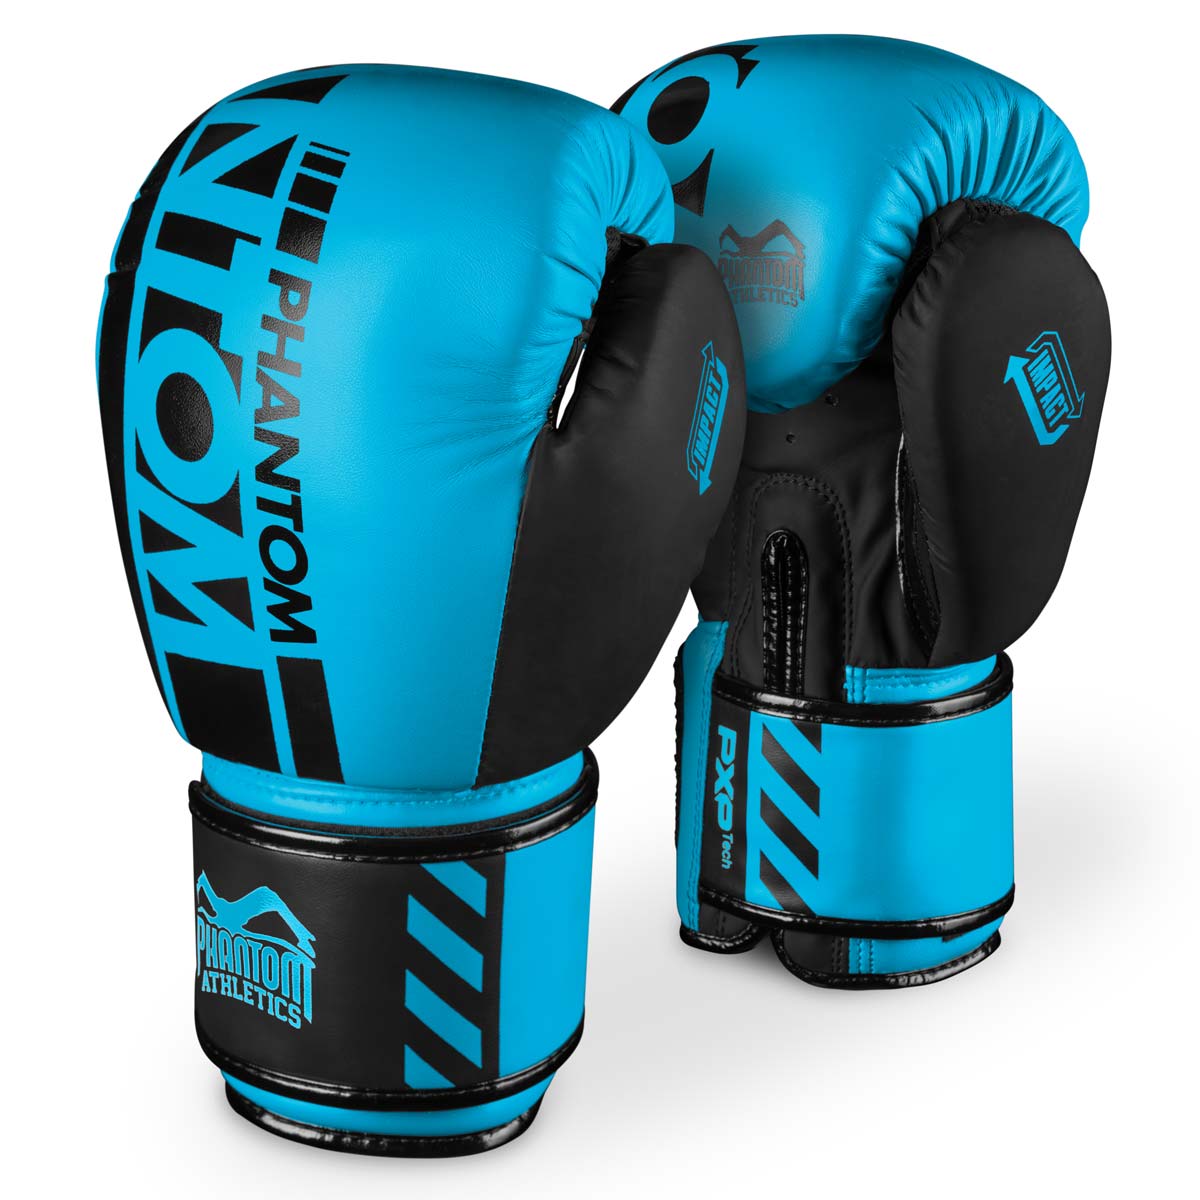 Phantom APEX NEON Boxhandschuhe. Hochwertige Boxing Gloves für deinen Kampfsport. Perfekte Verarbeitung machen diese Boxhandschuhe ideal für Training, Sparring und Wettkampf. Ideal für MMA, Muay Thai, Boxen und Kickboxen. Hier in Neon Blau.